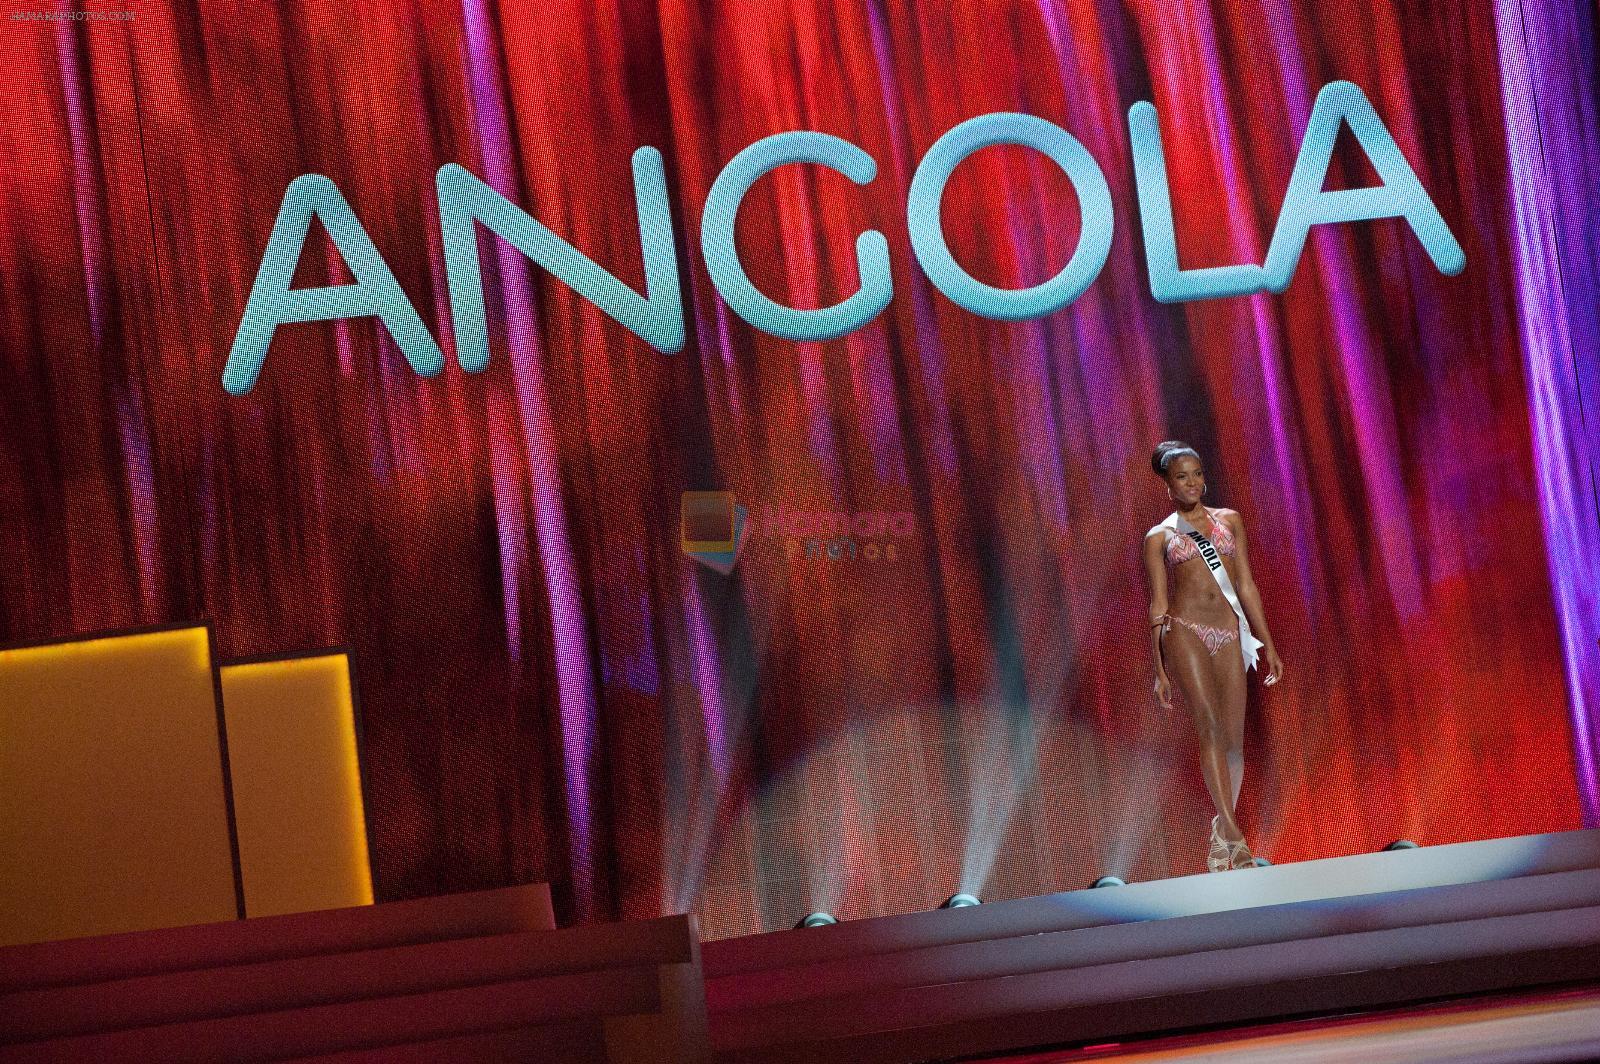 Miss Universe Angola 2011 bikini round